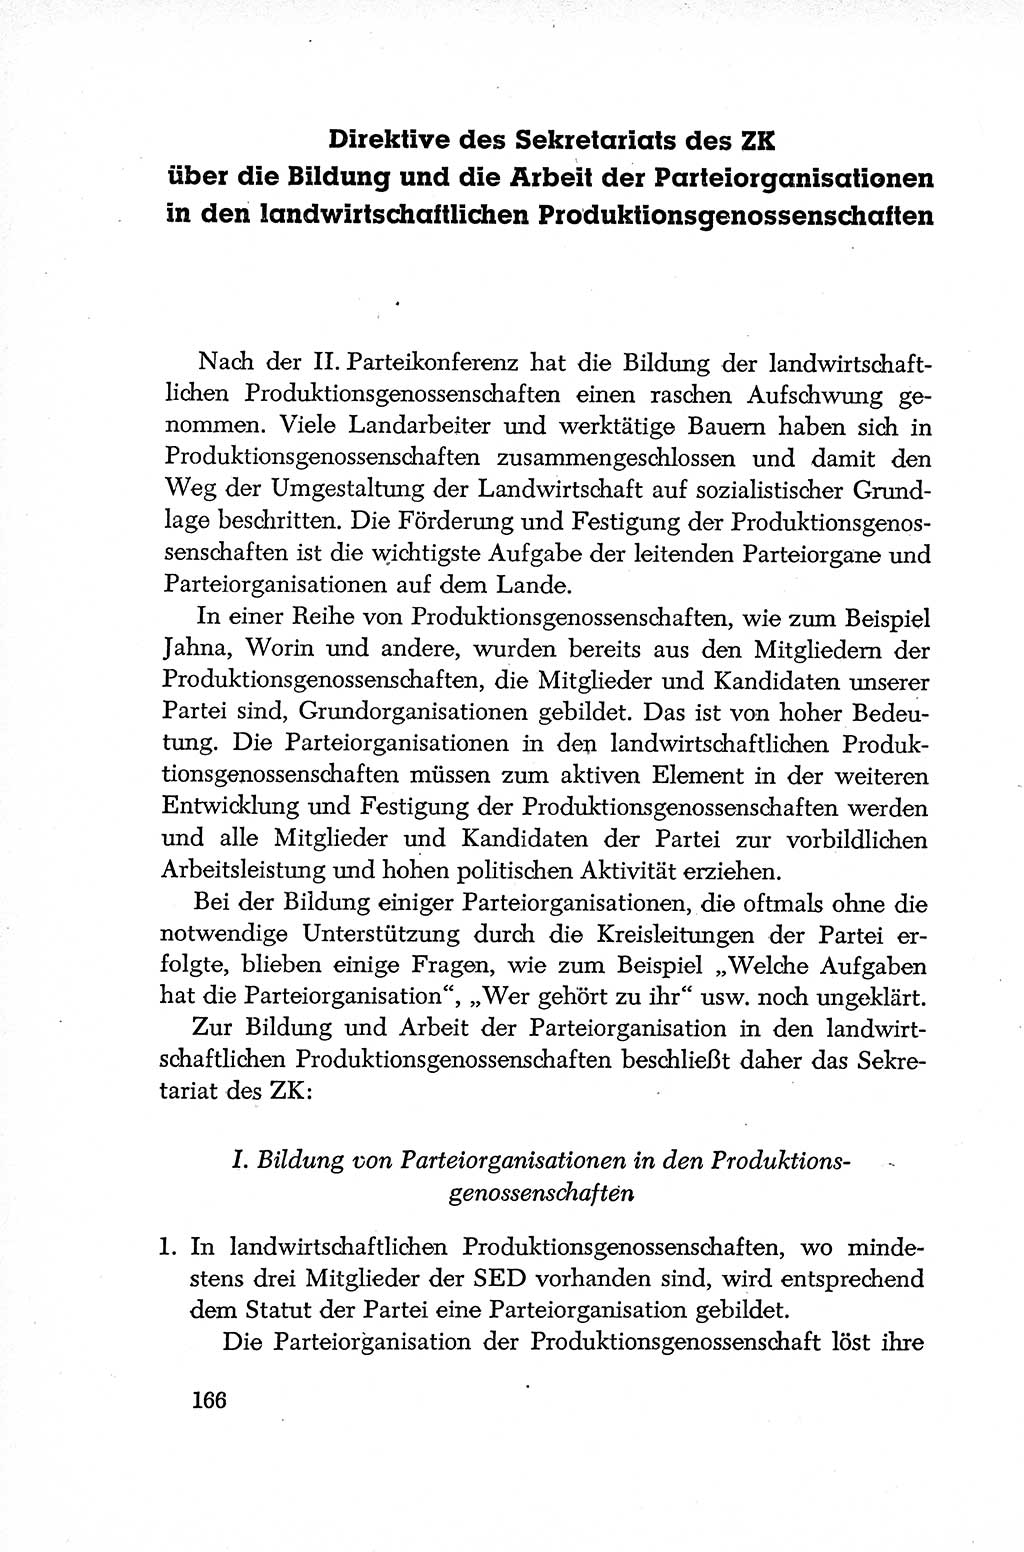 Dokumente der Sozialistischen Einheitspartei Deutschlands (SED) [Deutsche Demokratische Republik (DDR)] 1952-1953, Seite 166 (Dok. SED DDR 1952-1953, S. 166)